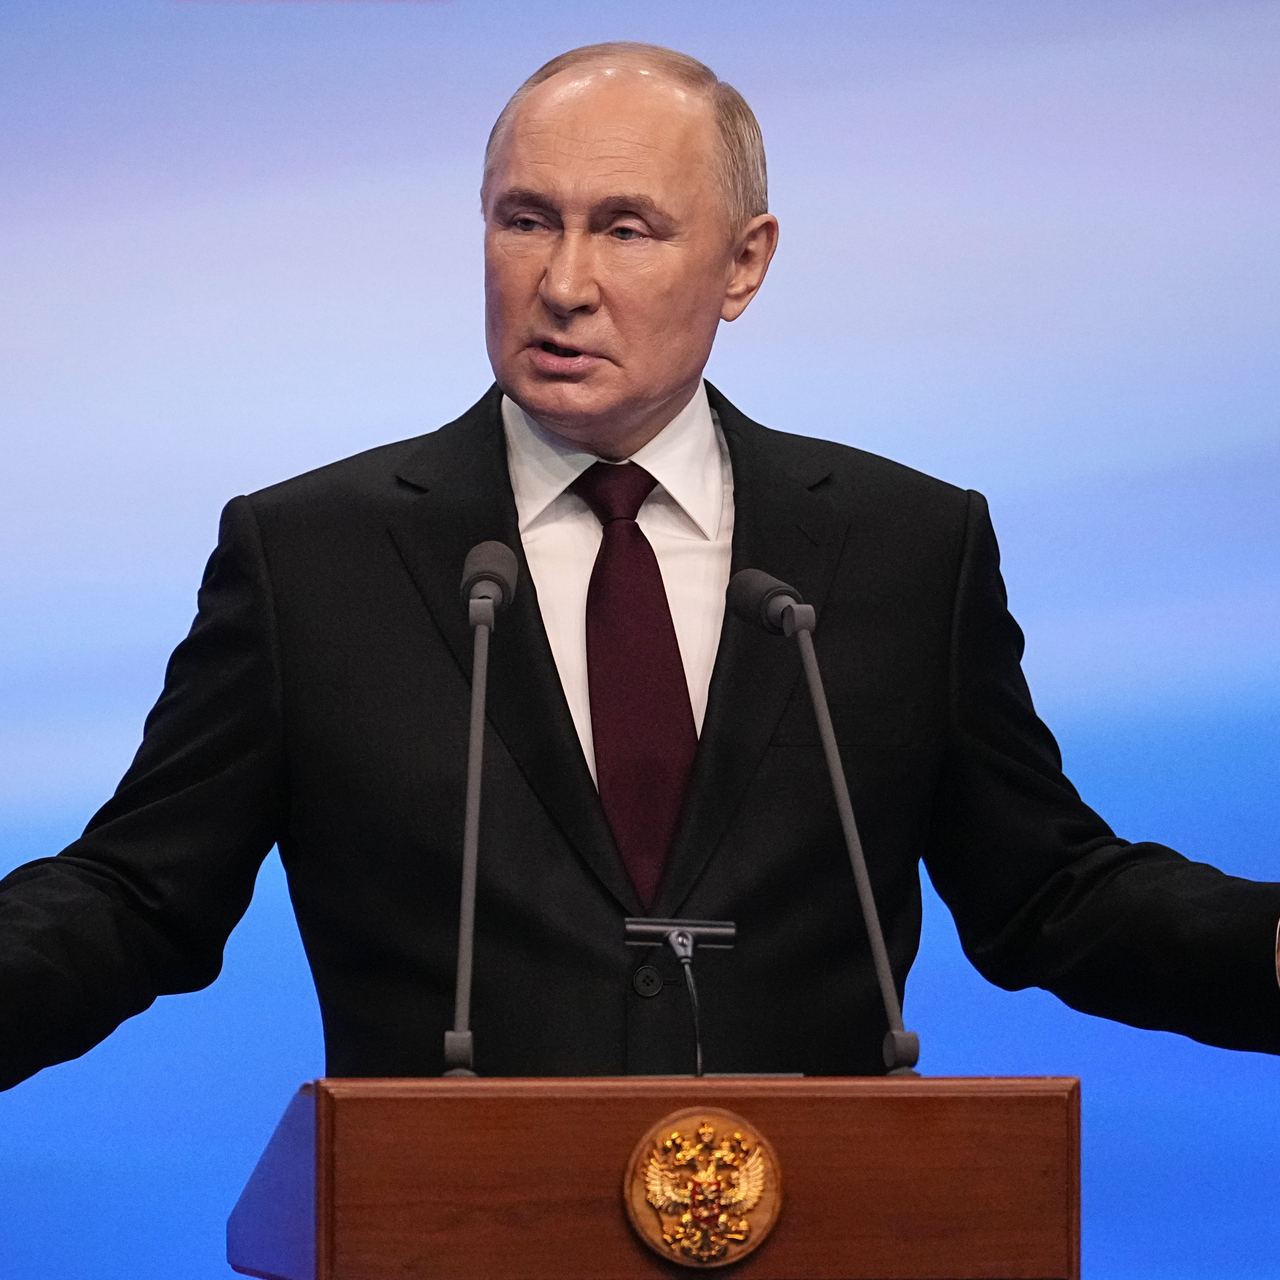 Rusya'da seçim: Kesin olmayan ilk sonuçlar açıklandı